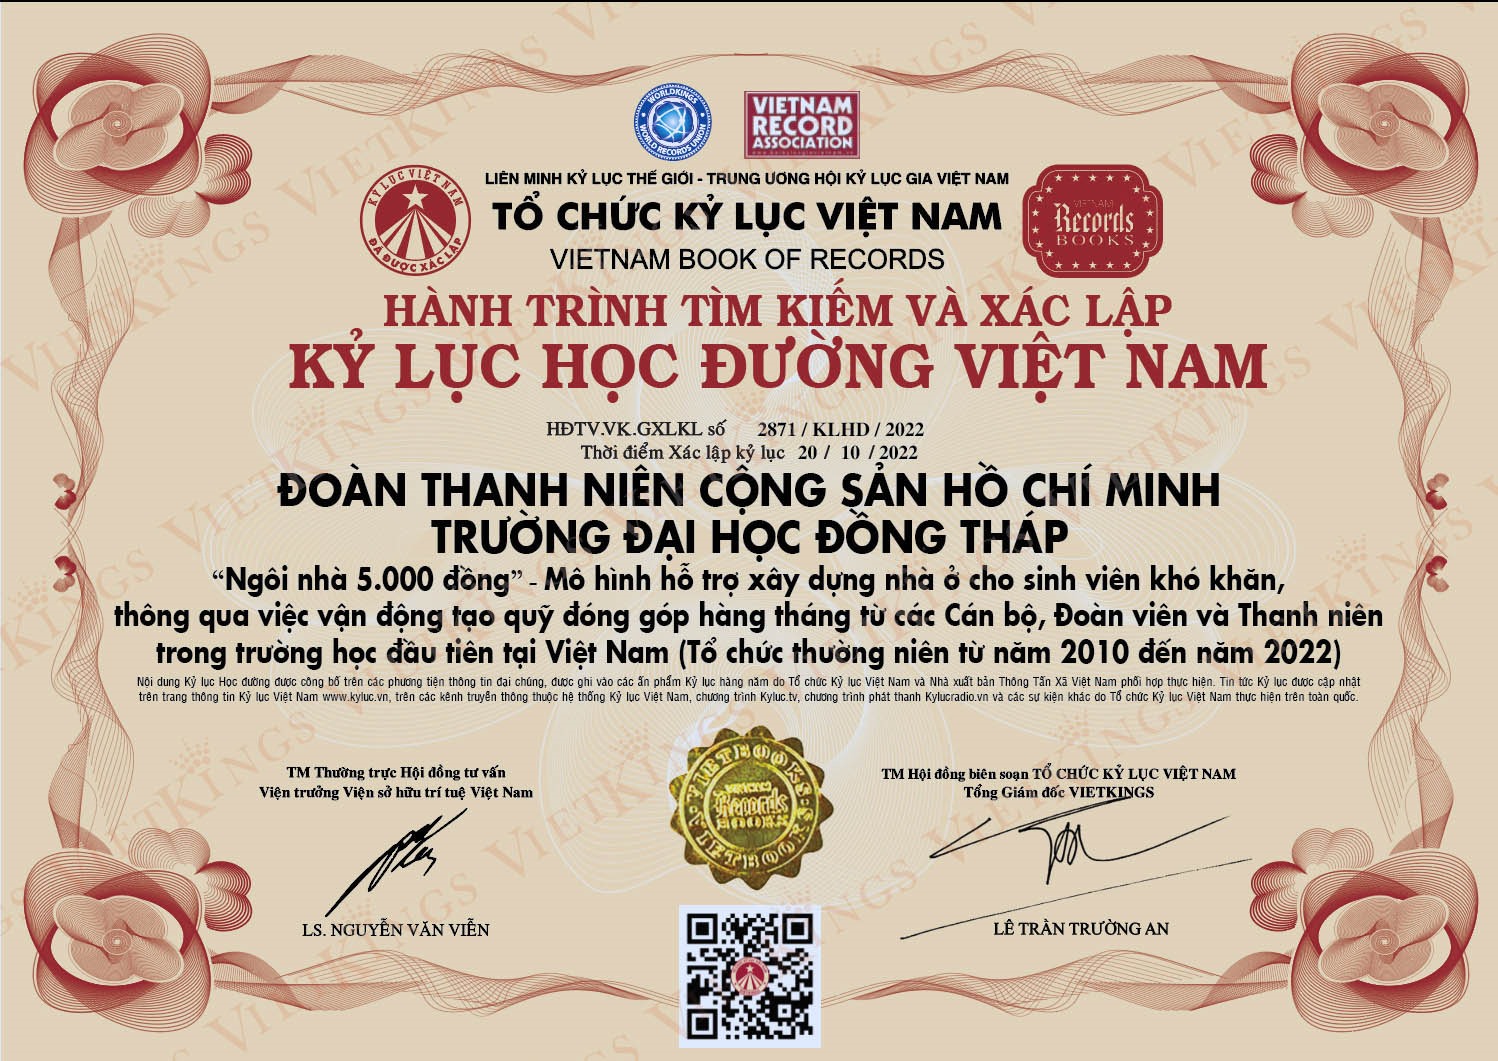 Kỷ lục Học đường tại Việt Nam cho mô hình “Ngôi nhà 5.000 đồng“. Ảnh: Văn Nghiêm